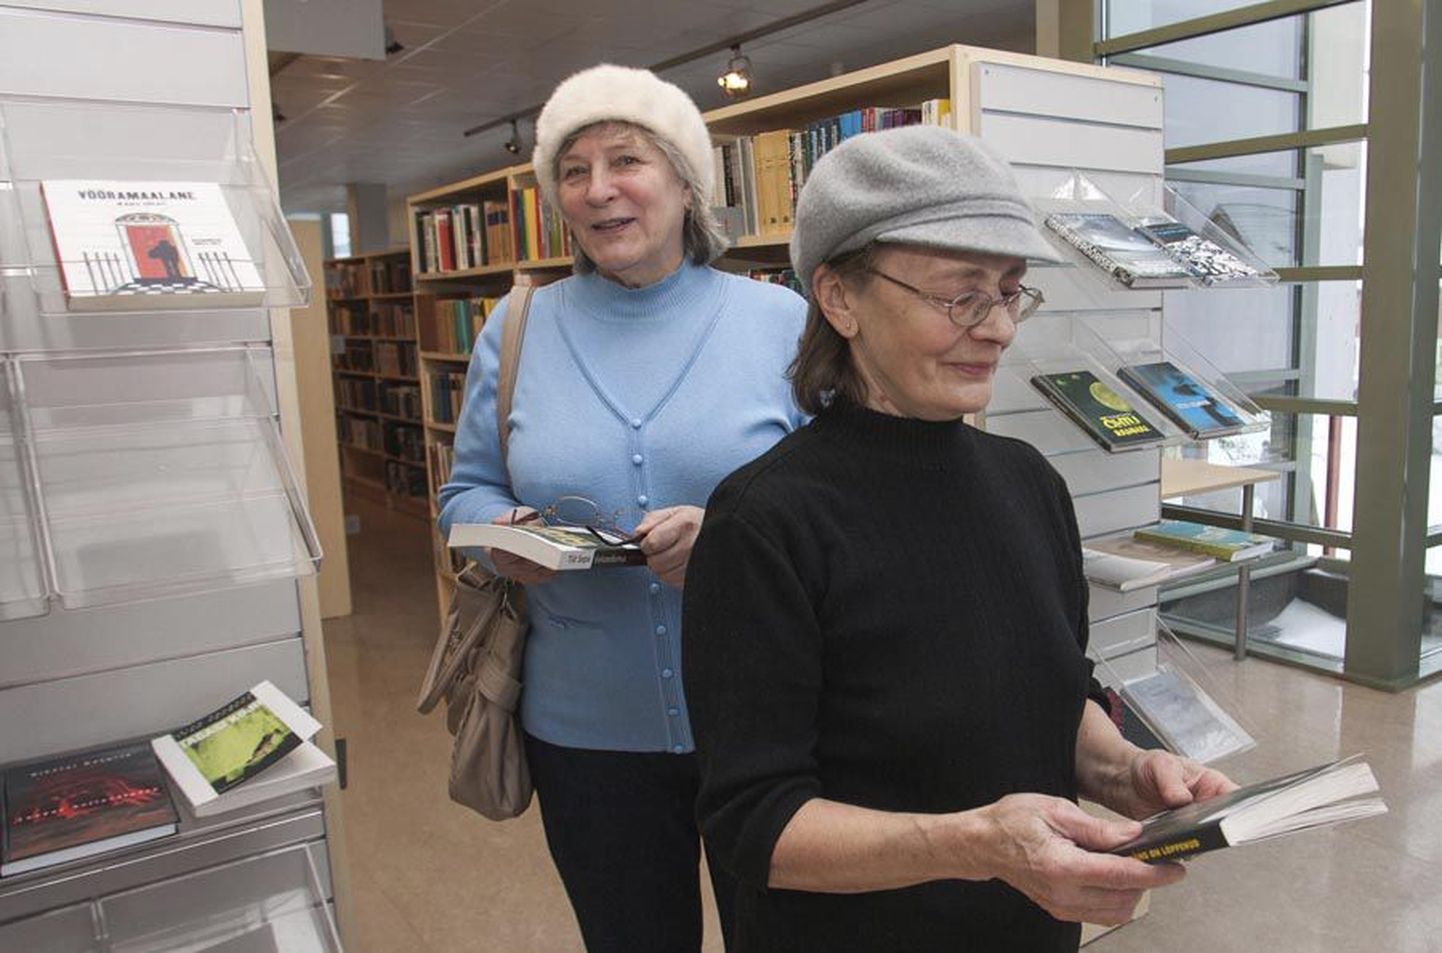 Eile linnaraamatukogus käinud Anu Potter (vasakul) on selle kunde olnud kümme ja Elve Meier vähemalt viisteist aastat.